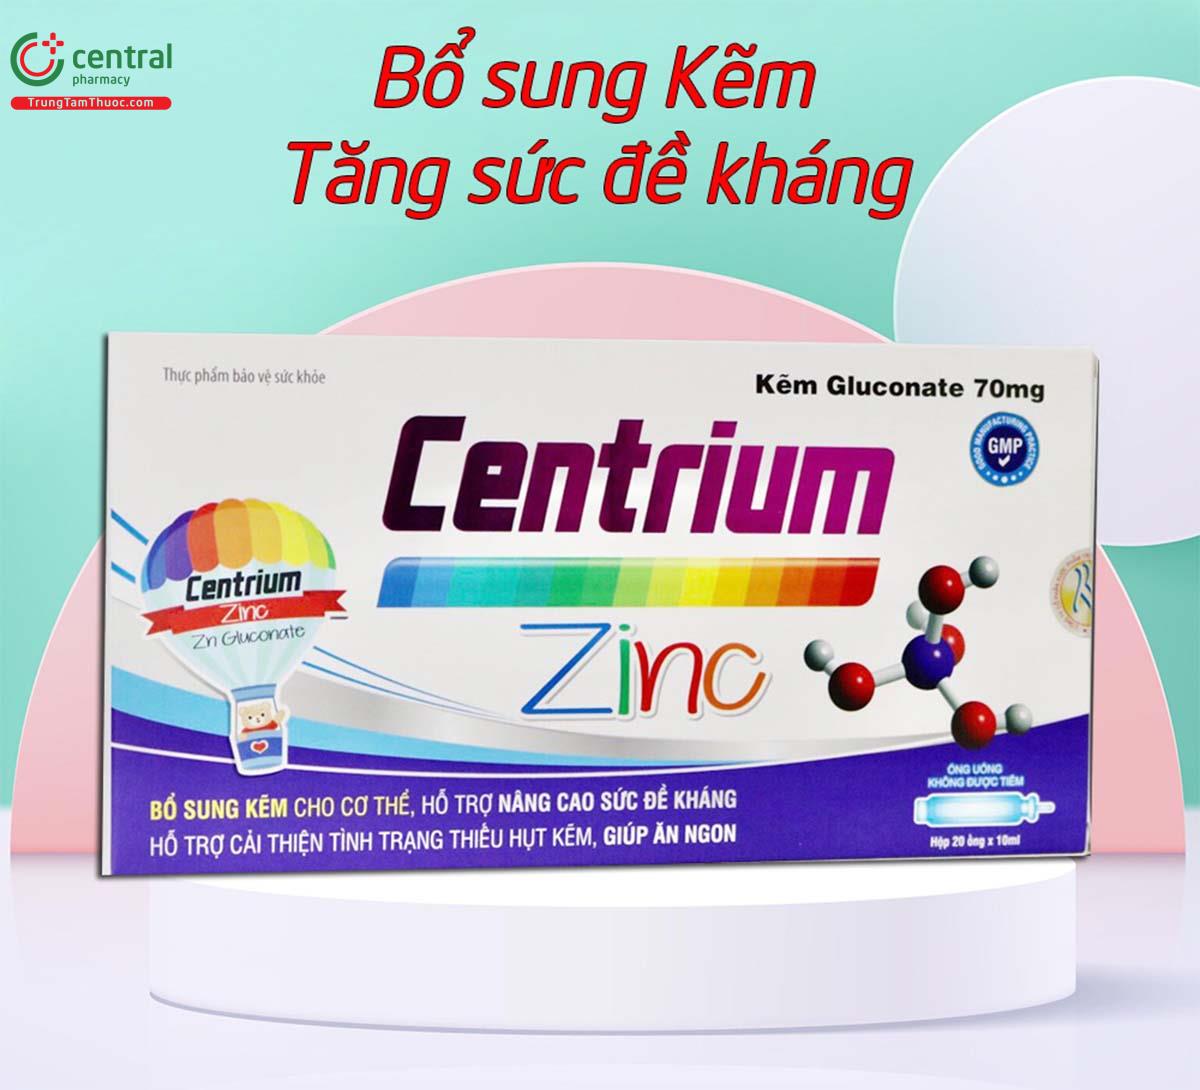 Centrium Zinc giúp tăng cường miễn dịch cho trẻ